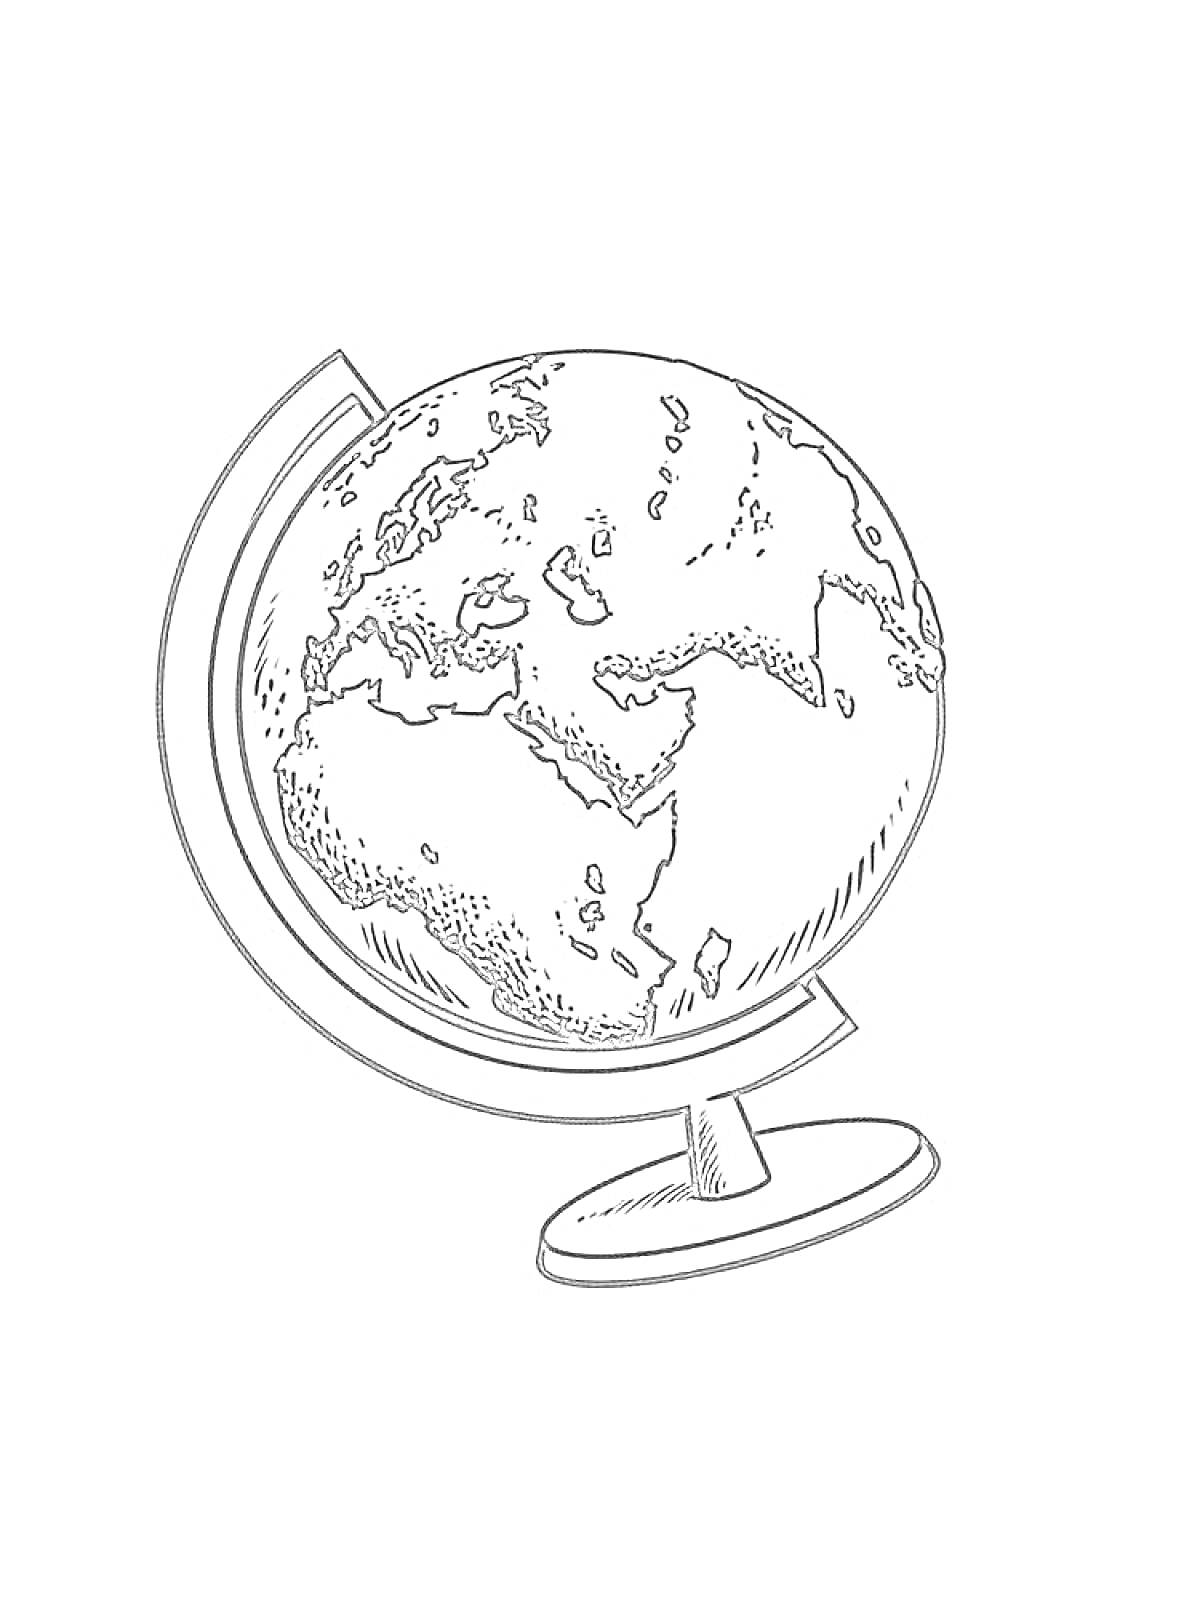 Раскраска Глобус с картой мира, на подставке